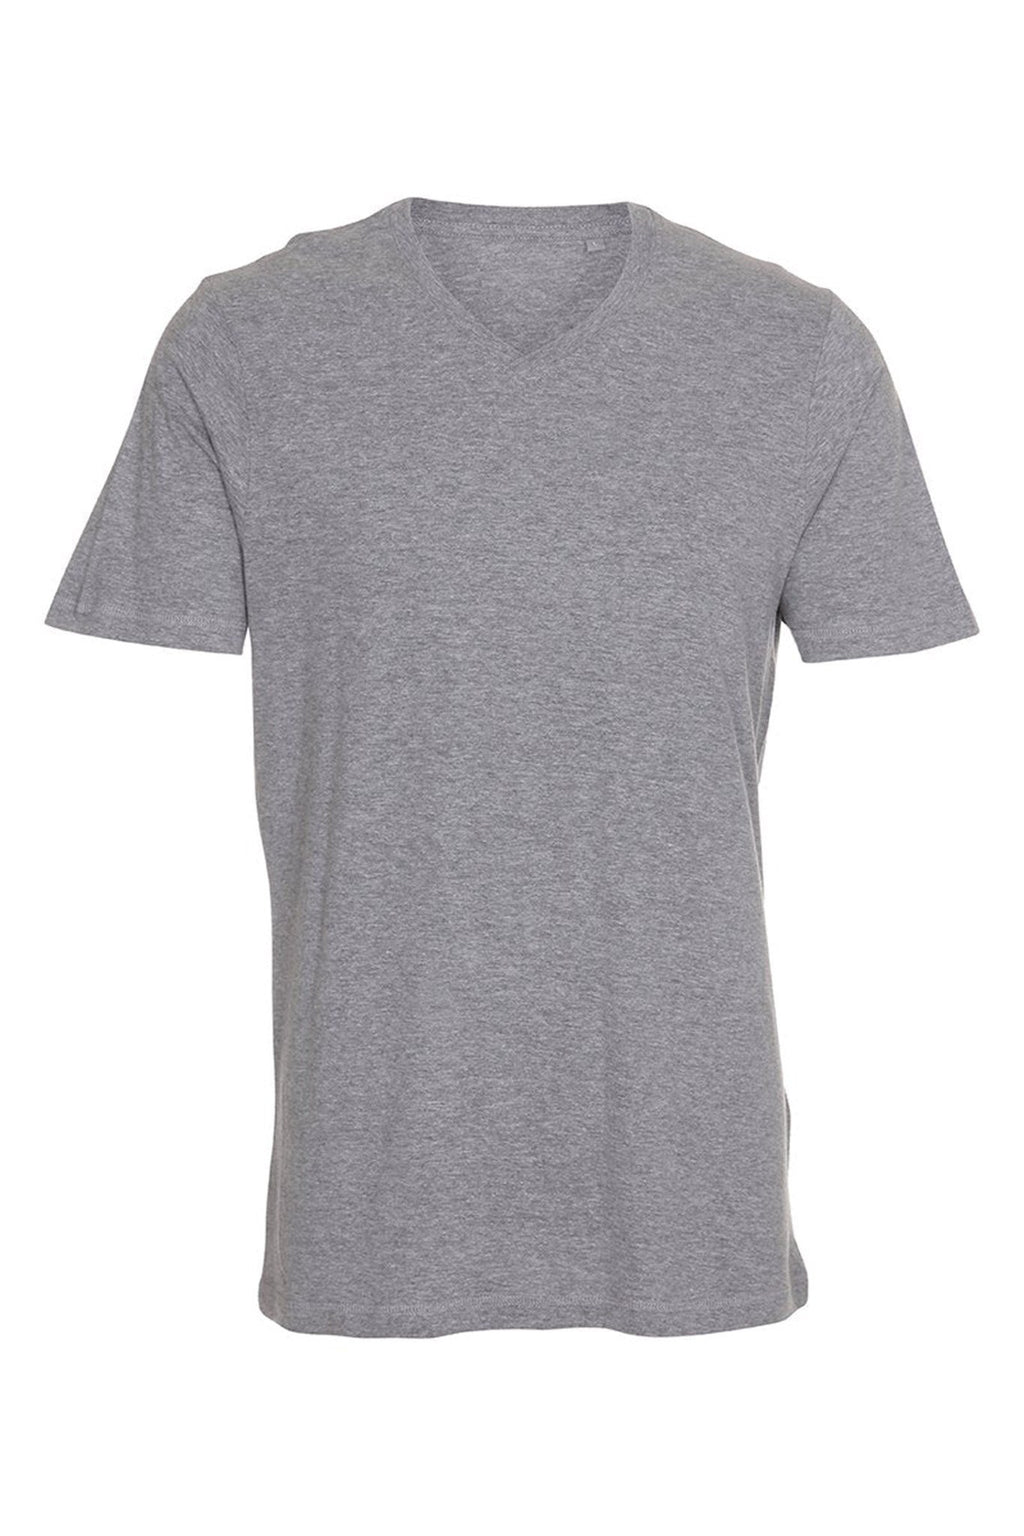 Basic V-neck t-shirt - Oxford Grå